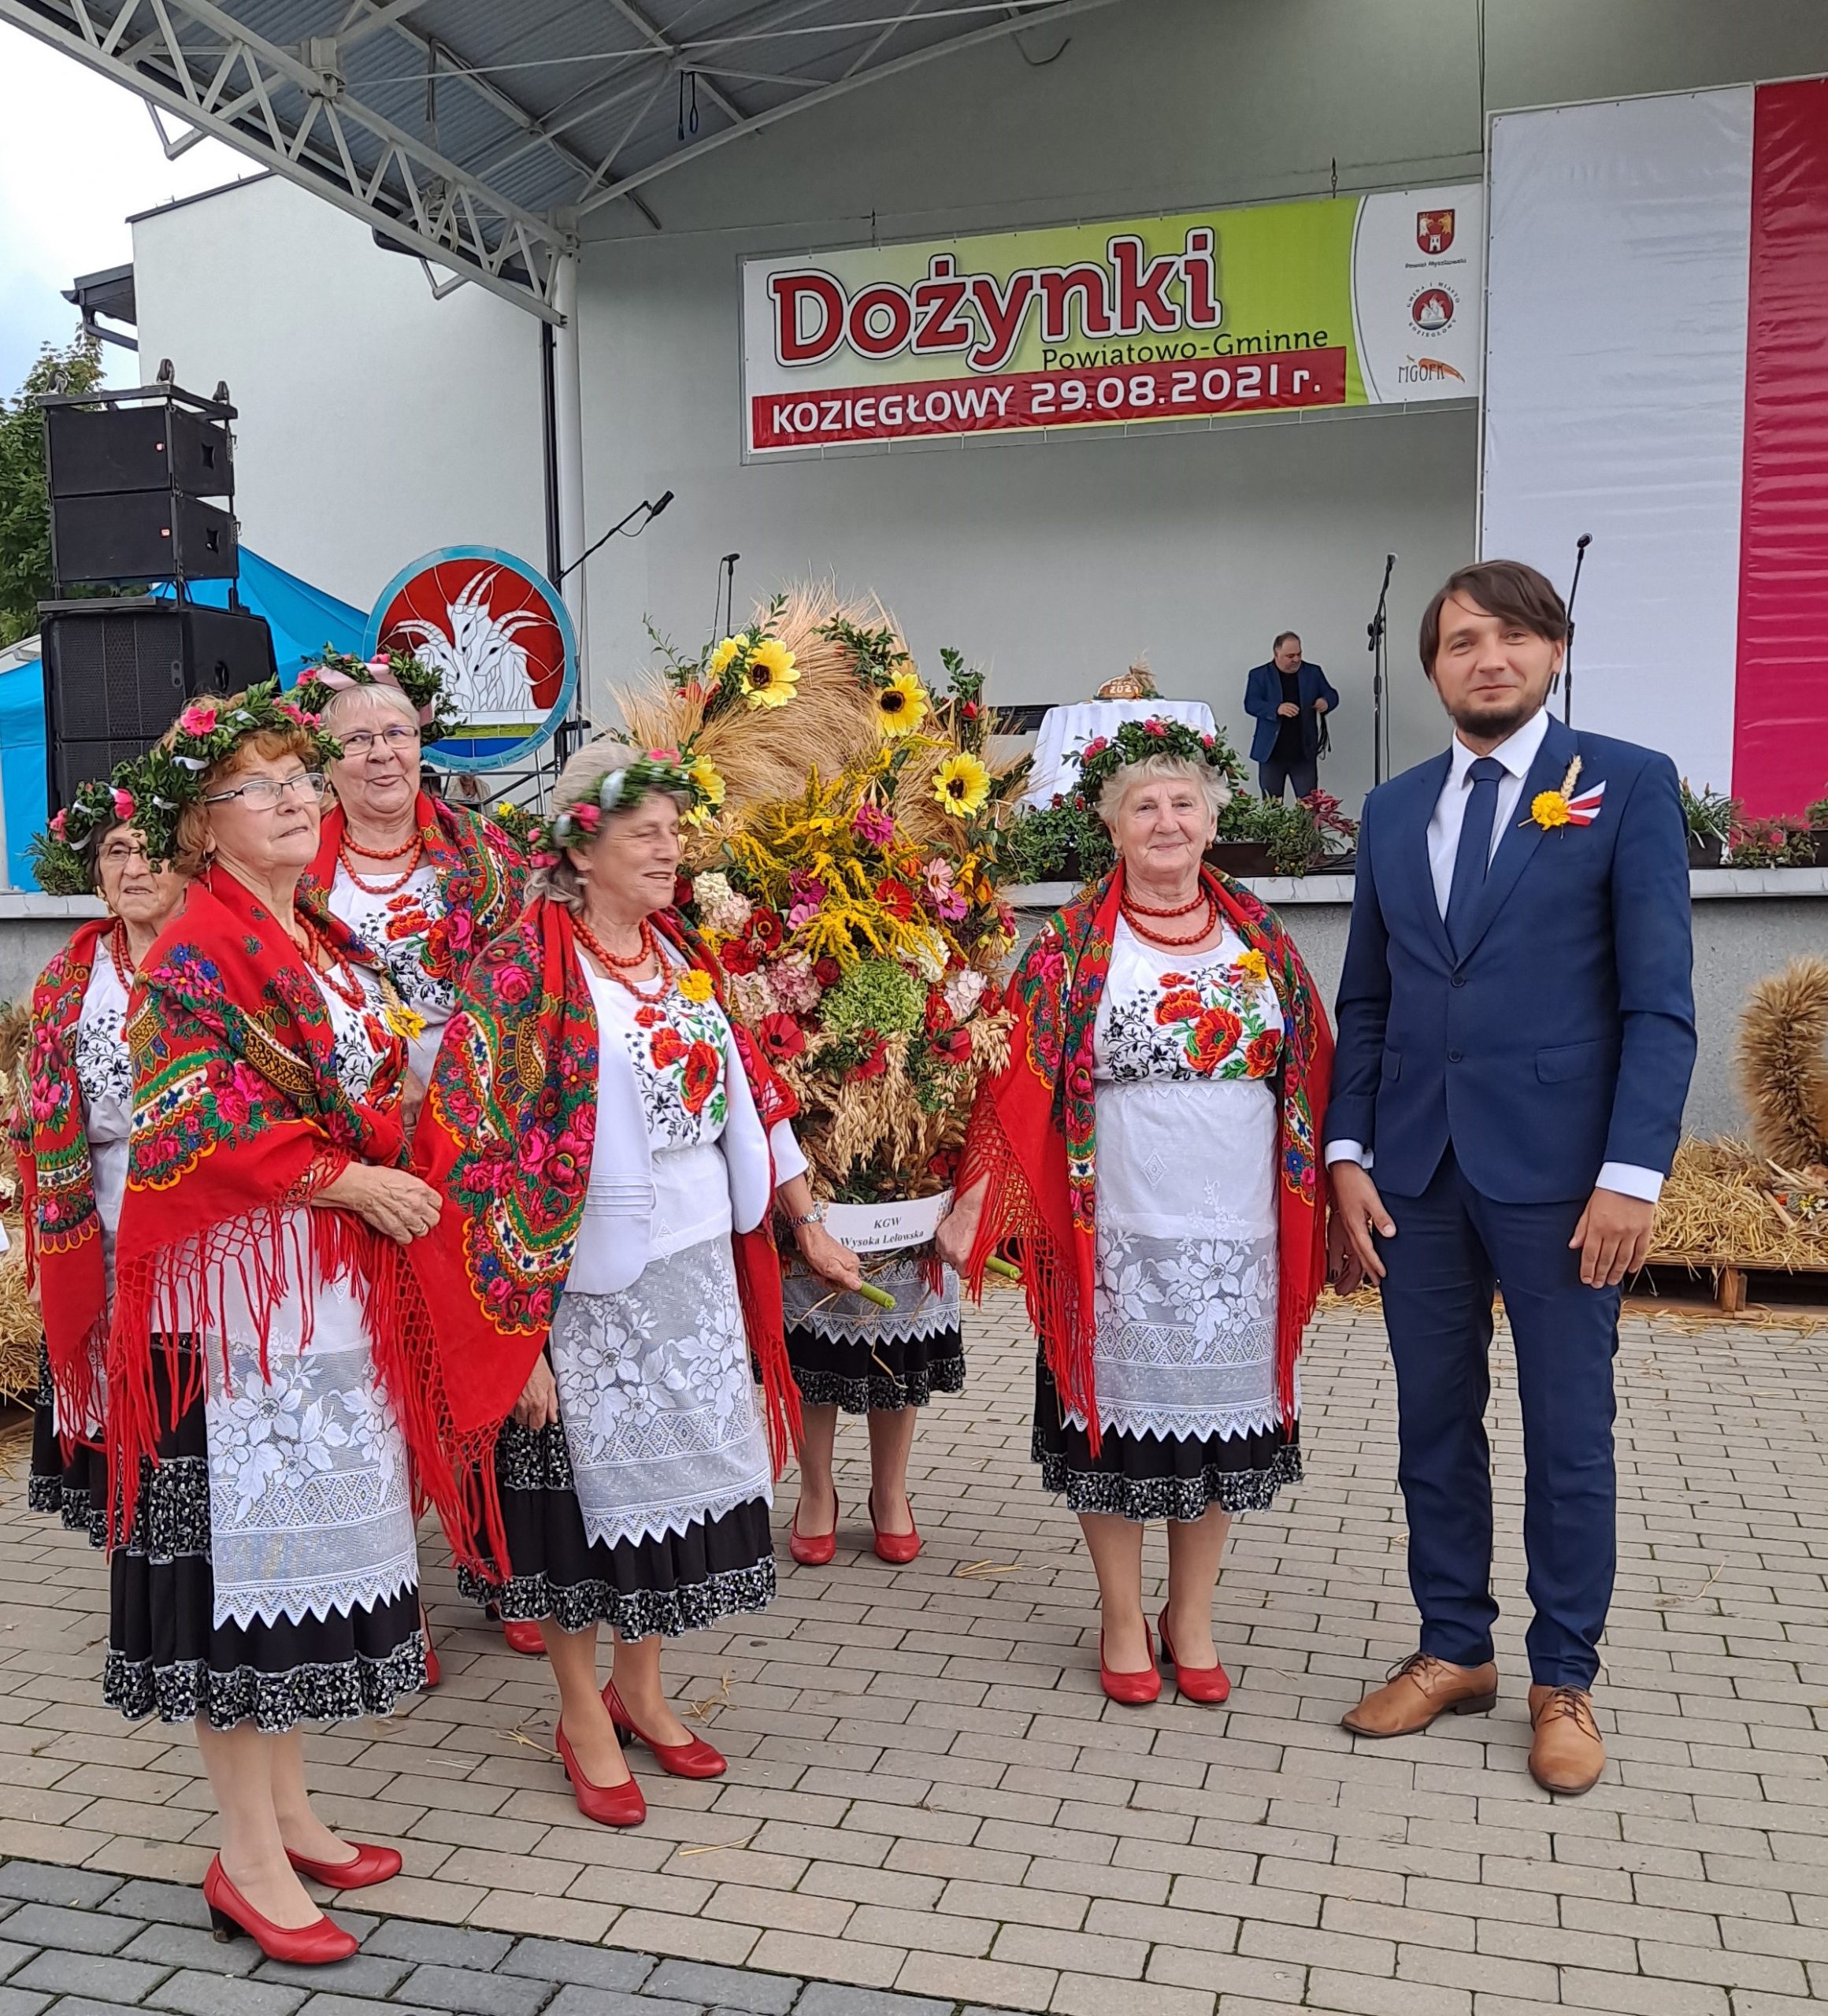 Nagrodzona rolniczka z Suliszowic podczas Powiatowych Dożynek w Koziegłowach 9